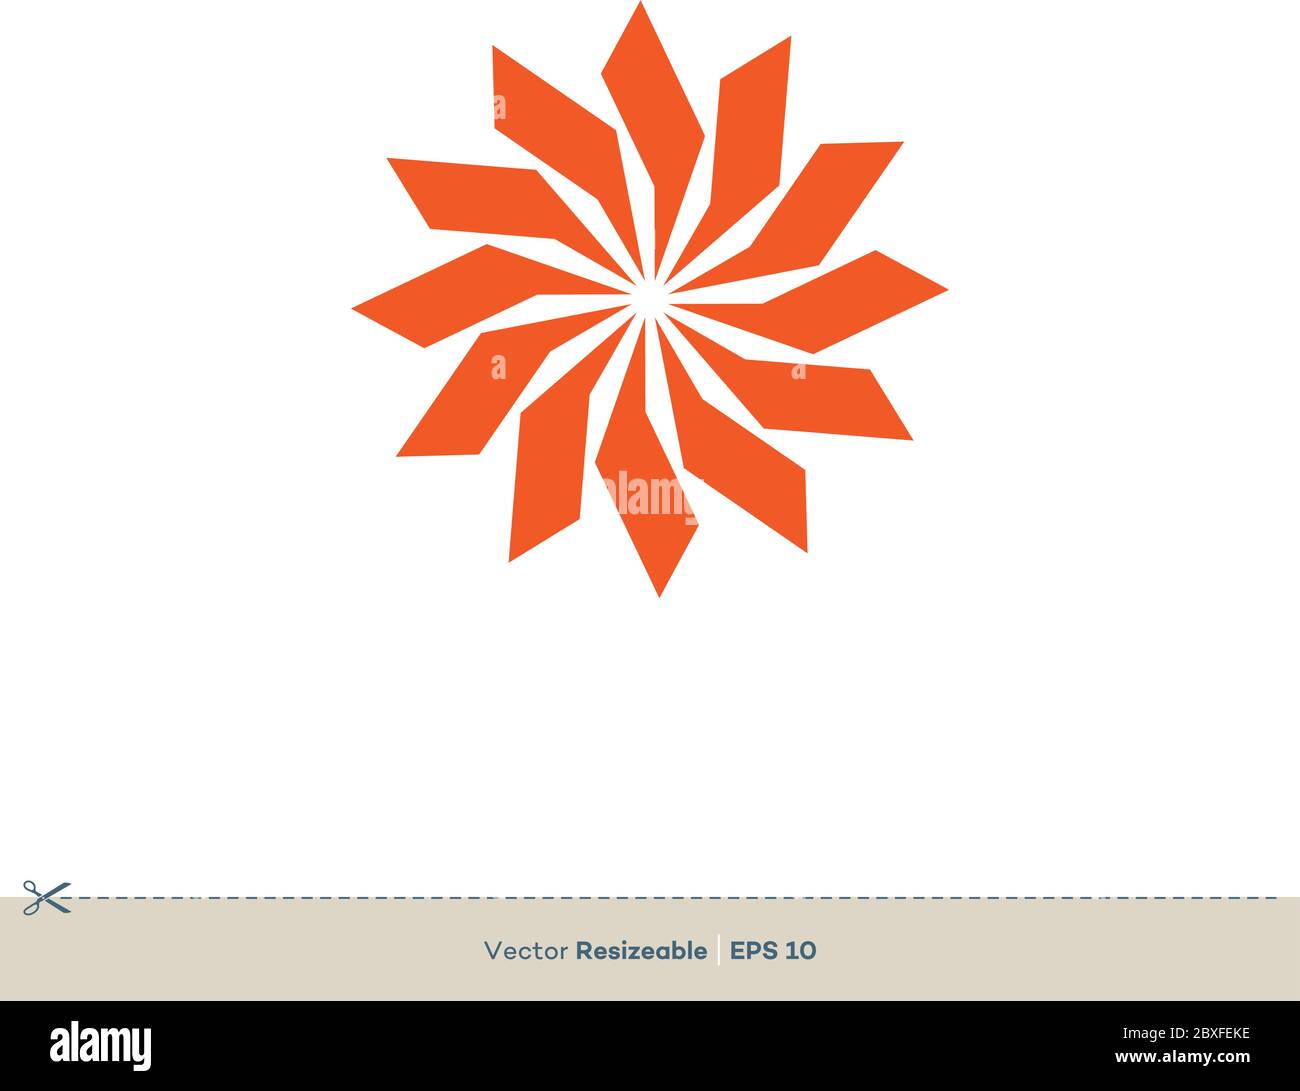 Orange Star Flower Vector Logo Template Illustration Design. Vector EPS 10. Stock Vector